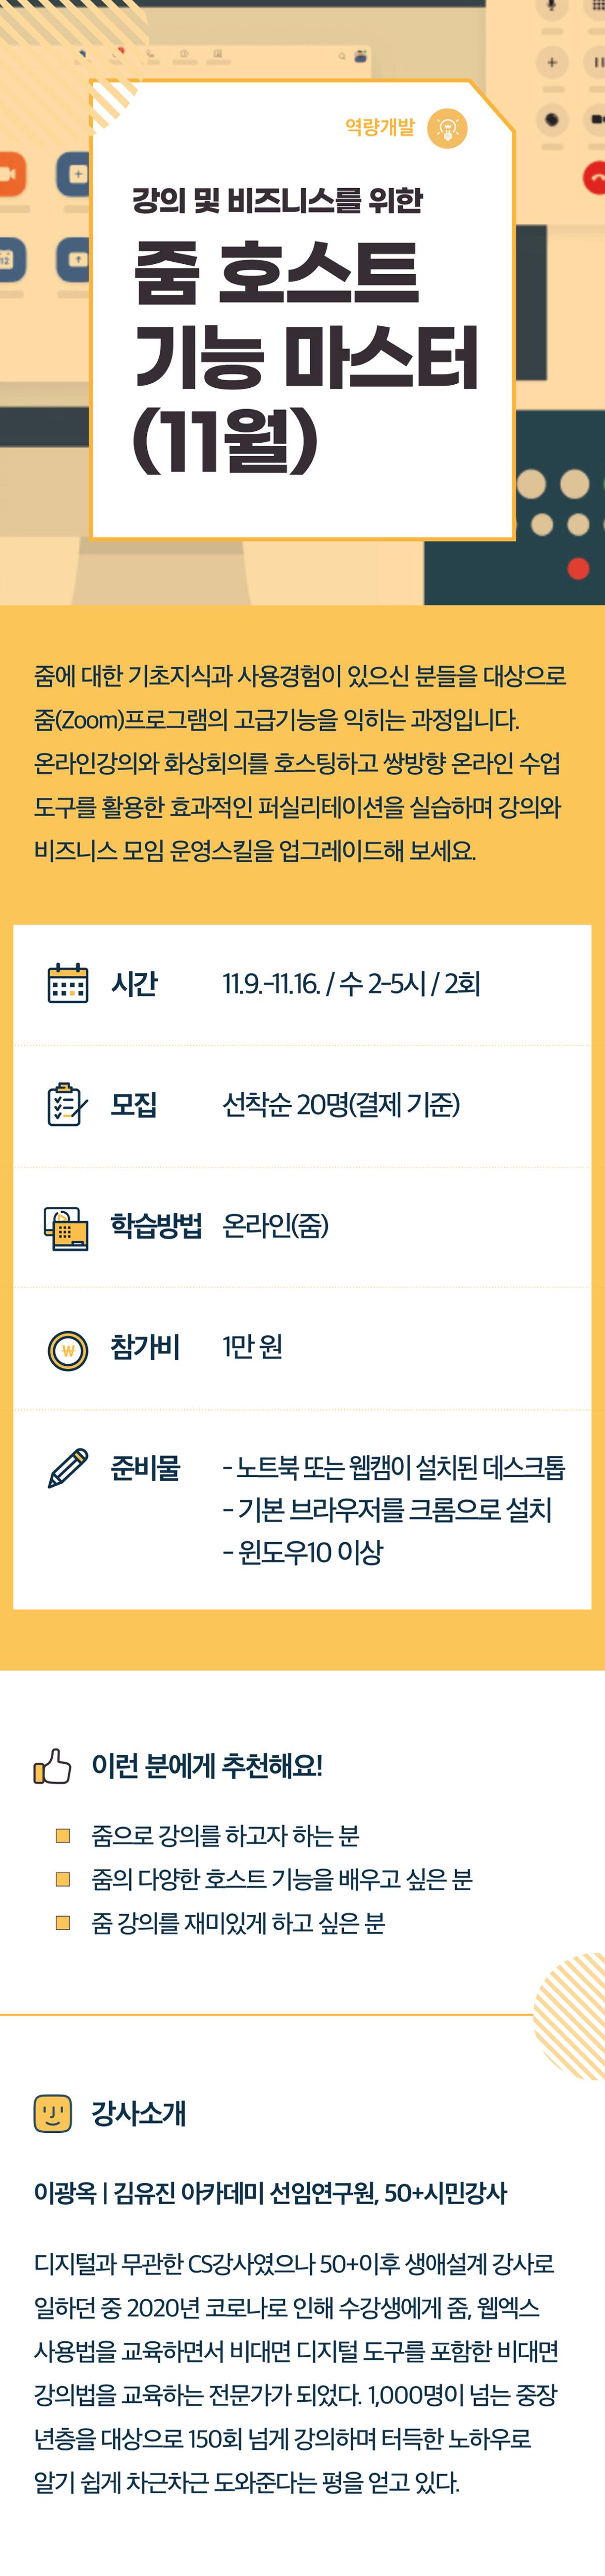 2022서부캠하반기_역량개발13_줌호스트(11월).jpg